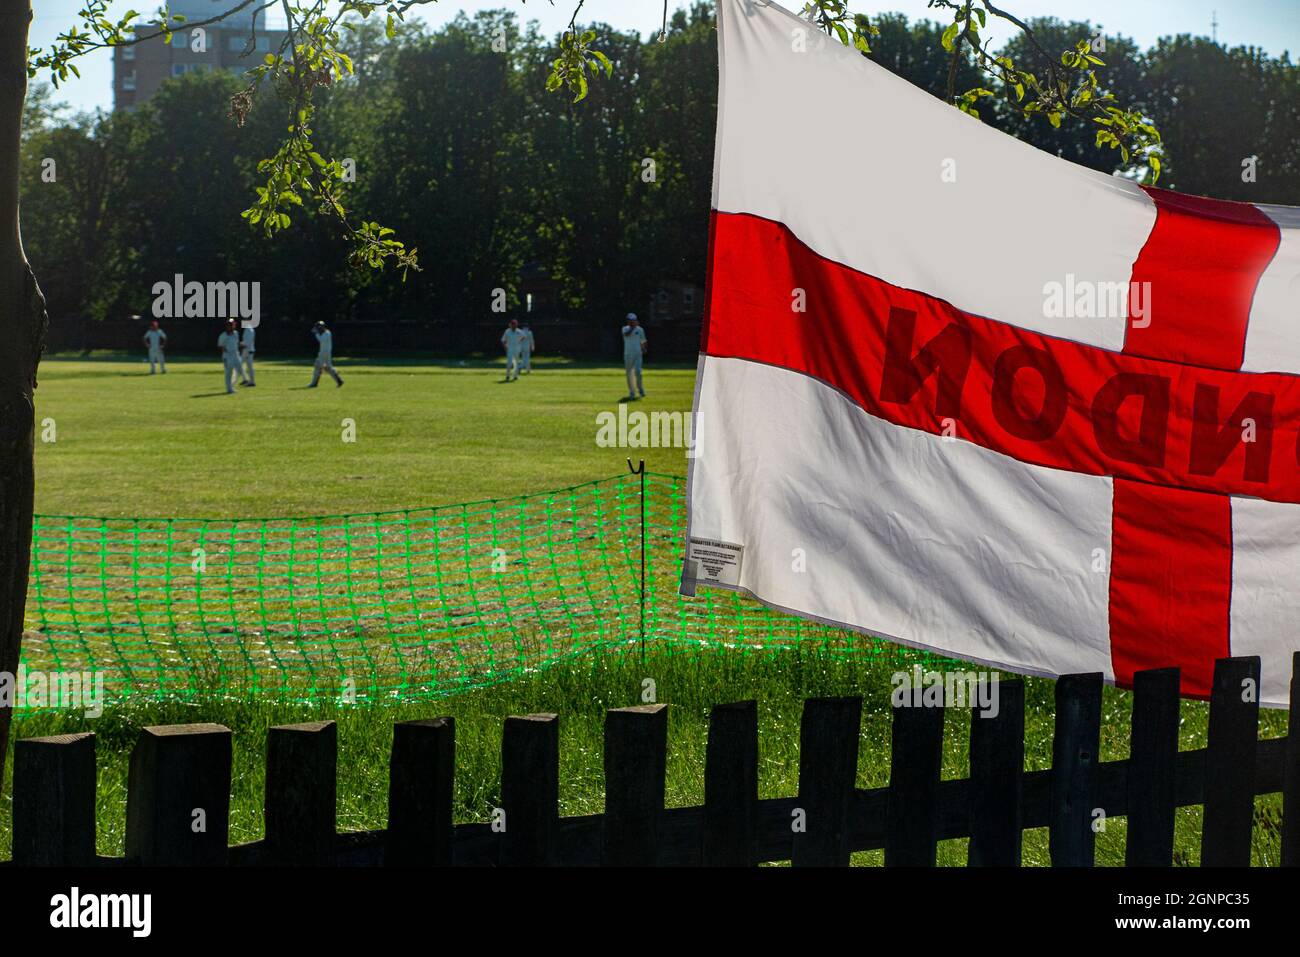 Base de cricket dans un parc de Londres avec un drapeau de St George Banque D'Images